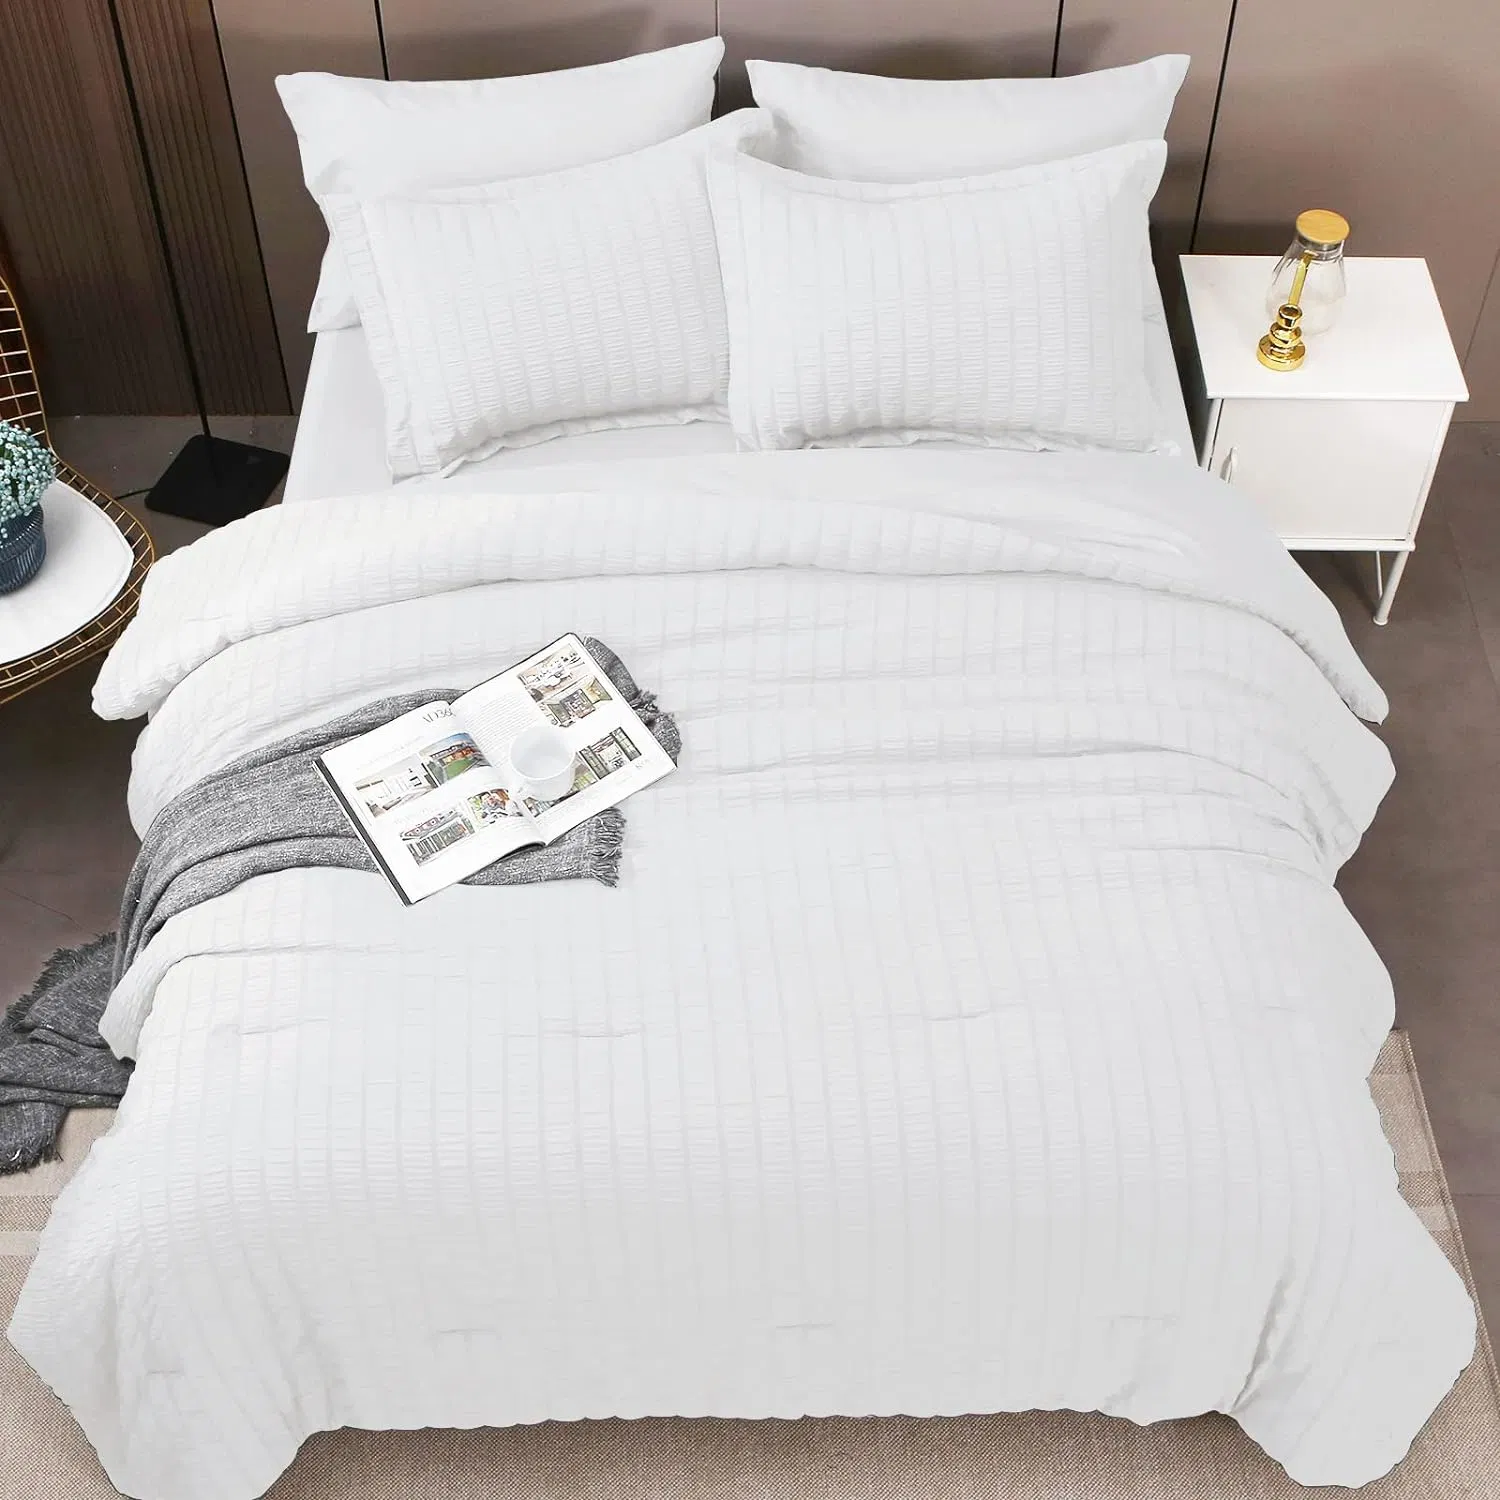 Ensemble d'édredon blanc pour grand lit Sessucker ensemble de literie de 7 pièces avec édredons, draps, taies d'oreiller et couvre-oreillers dans un sac pour chambre